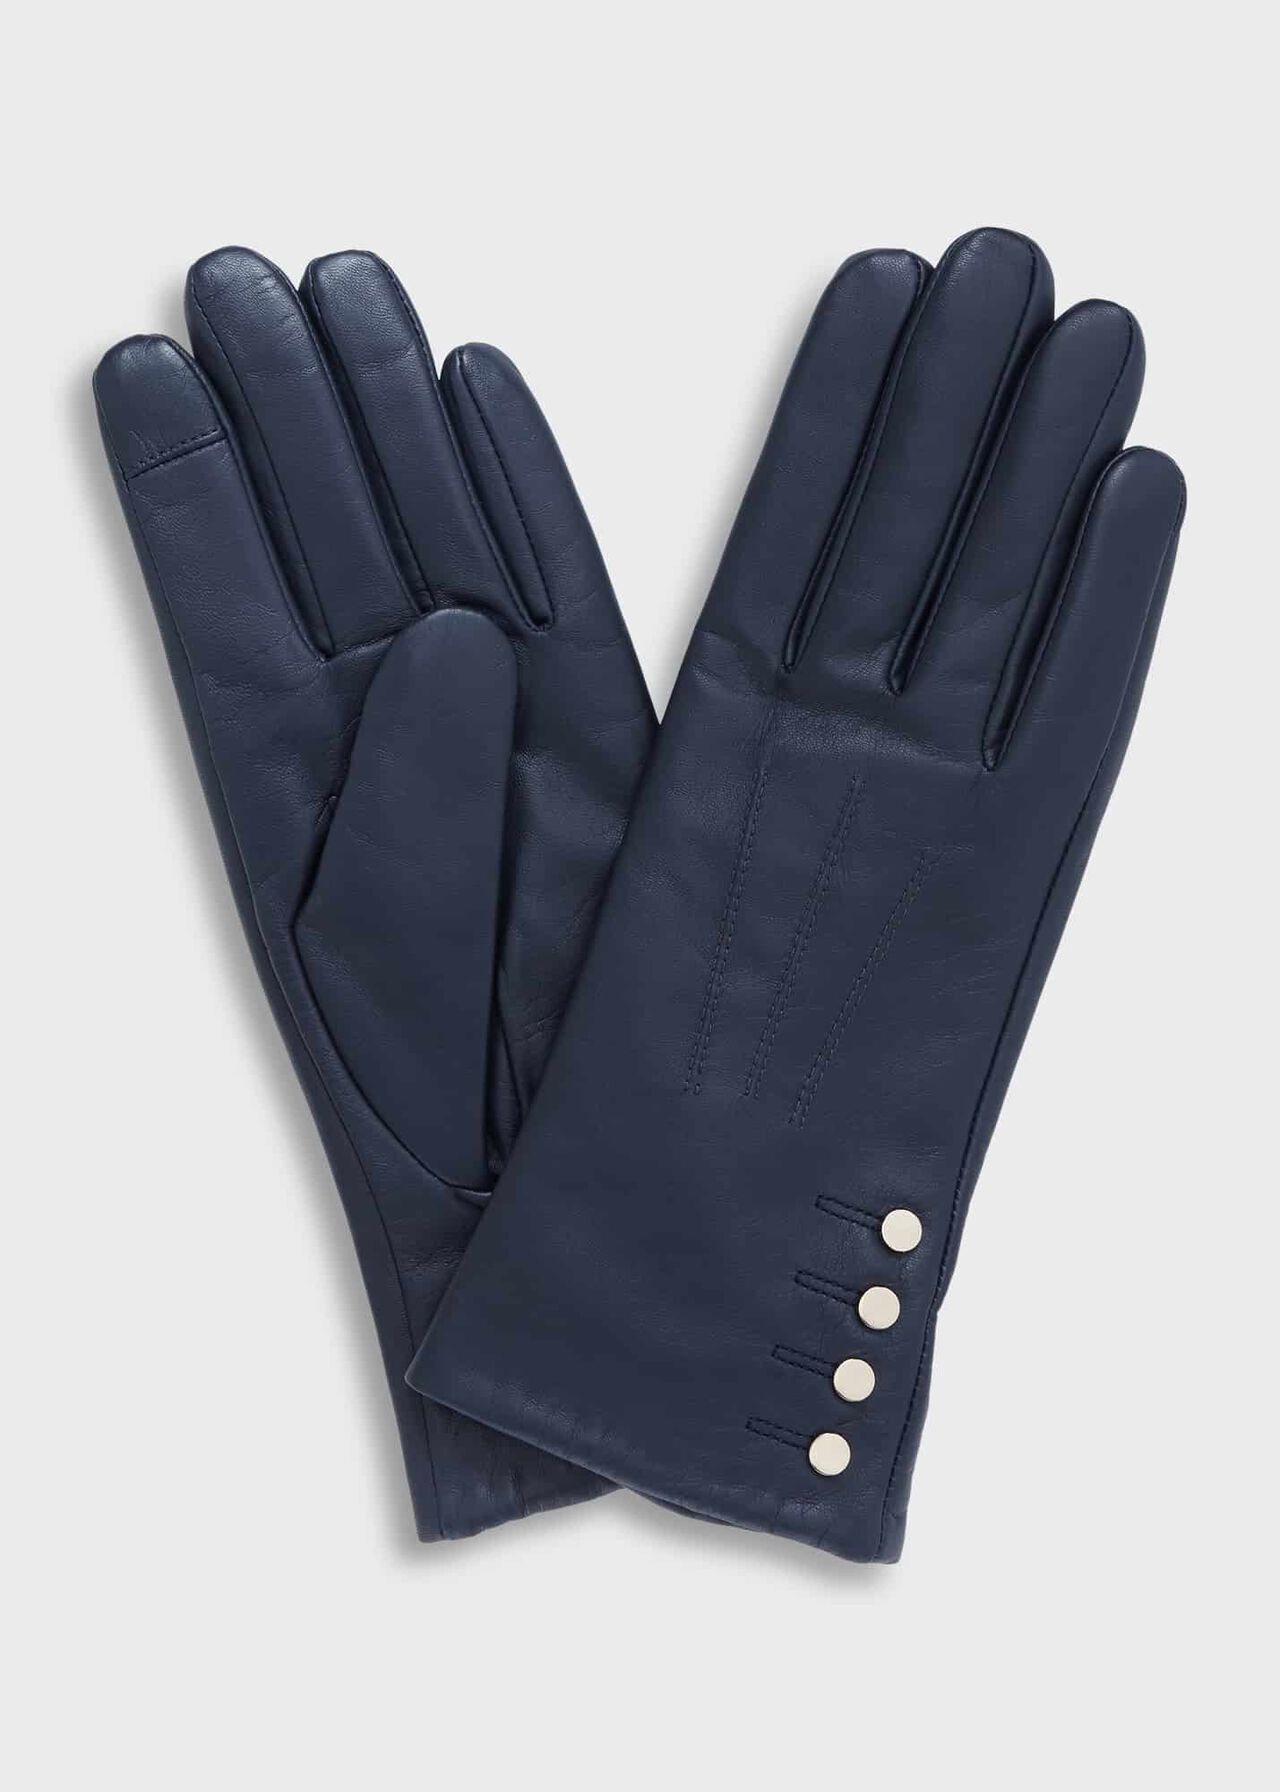 Sienna Leather Glove, Navy, hi-res